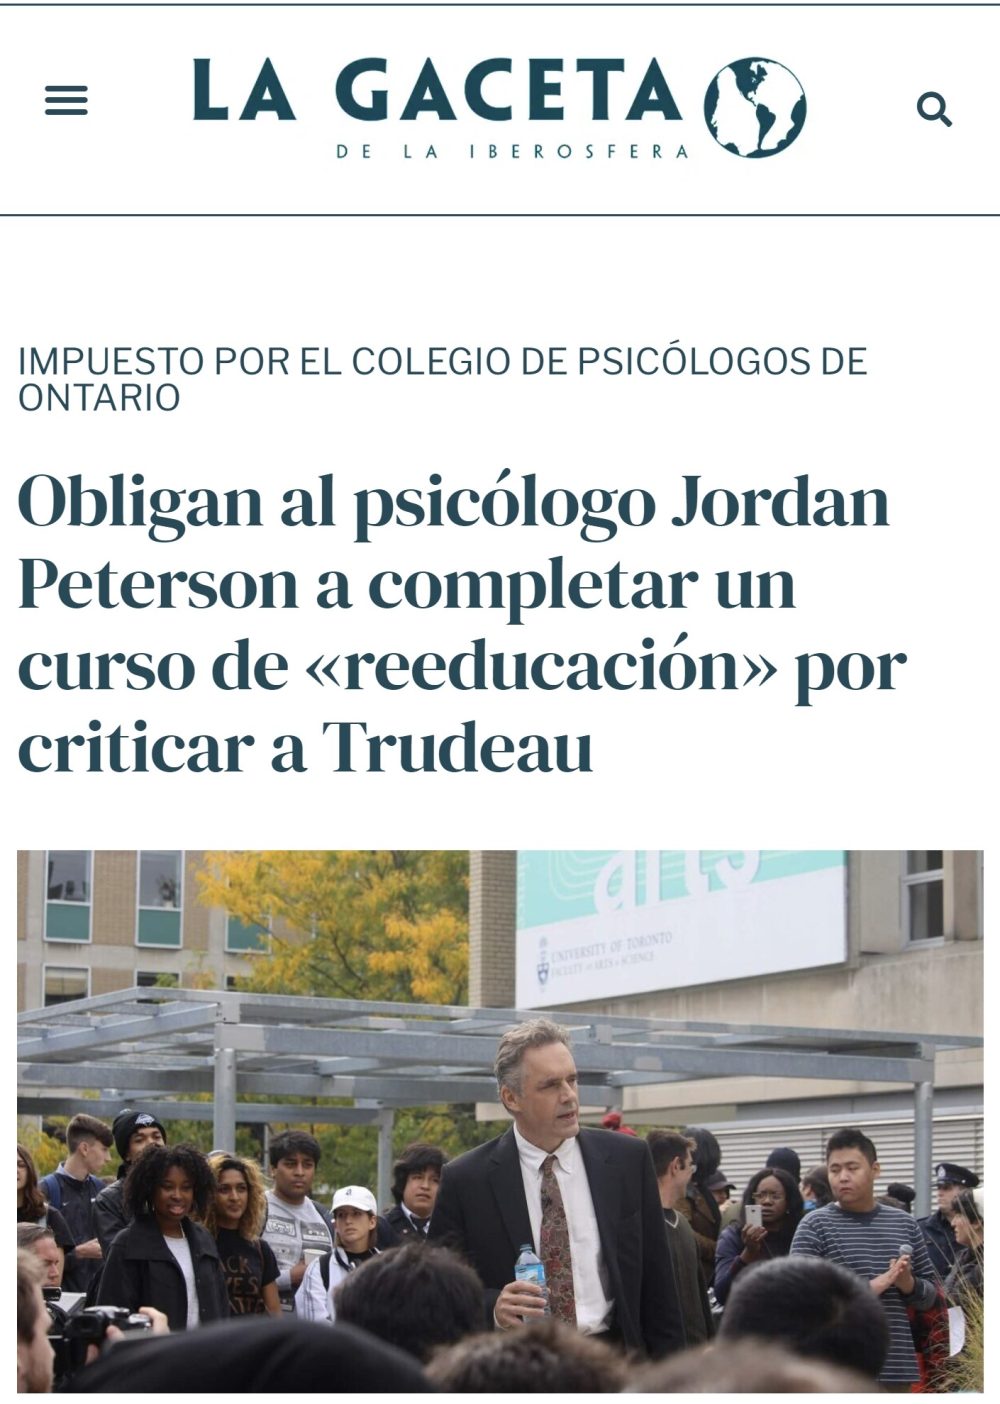 Jordan Peterson tendrá que completar un curso de "reeducación" por criticar al presidente de Canadá